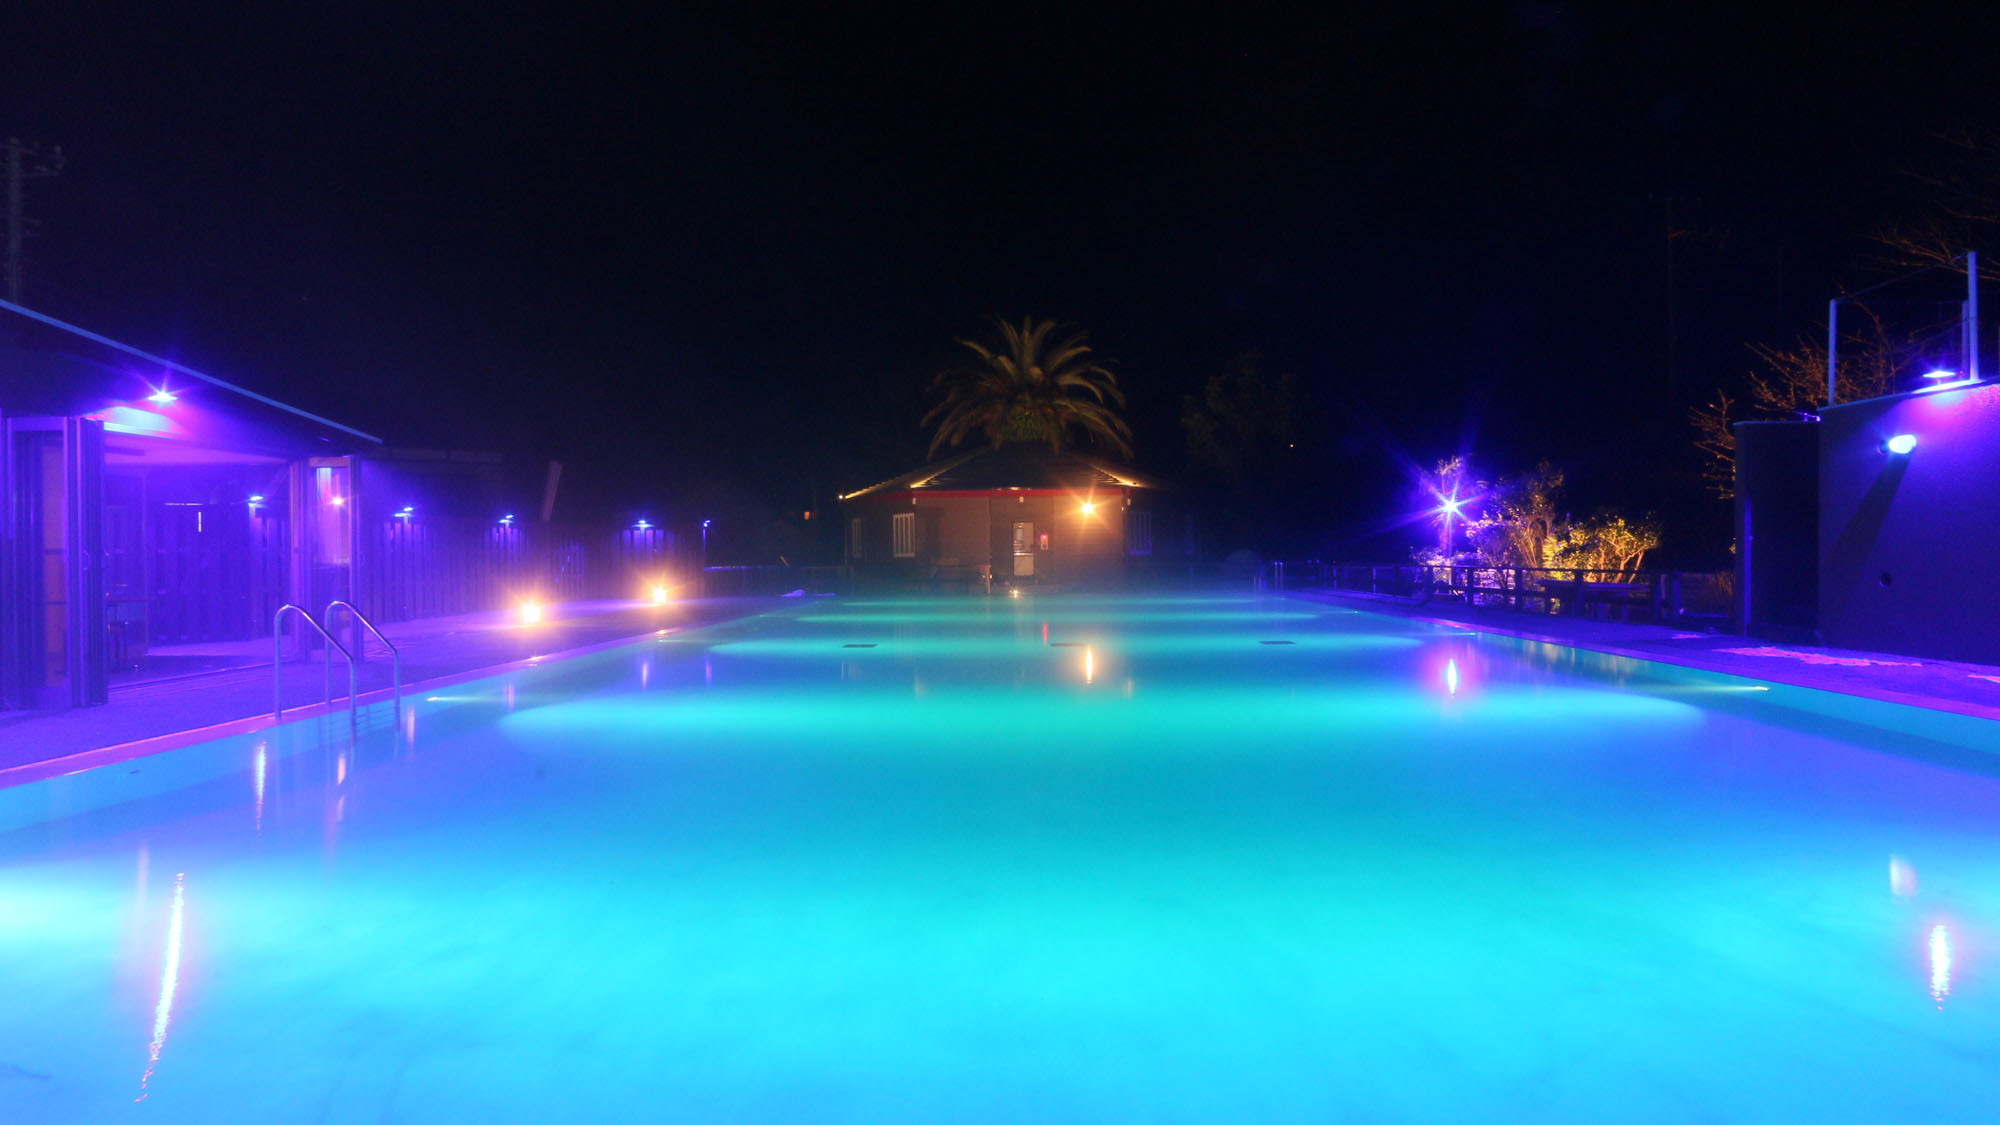 ナイトプール -Night pool-温泉プールは、夜もお楽しみいただけます